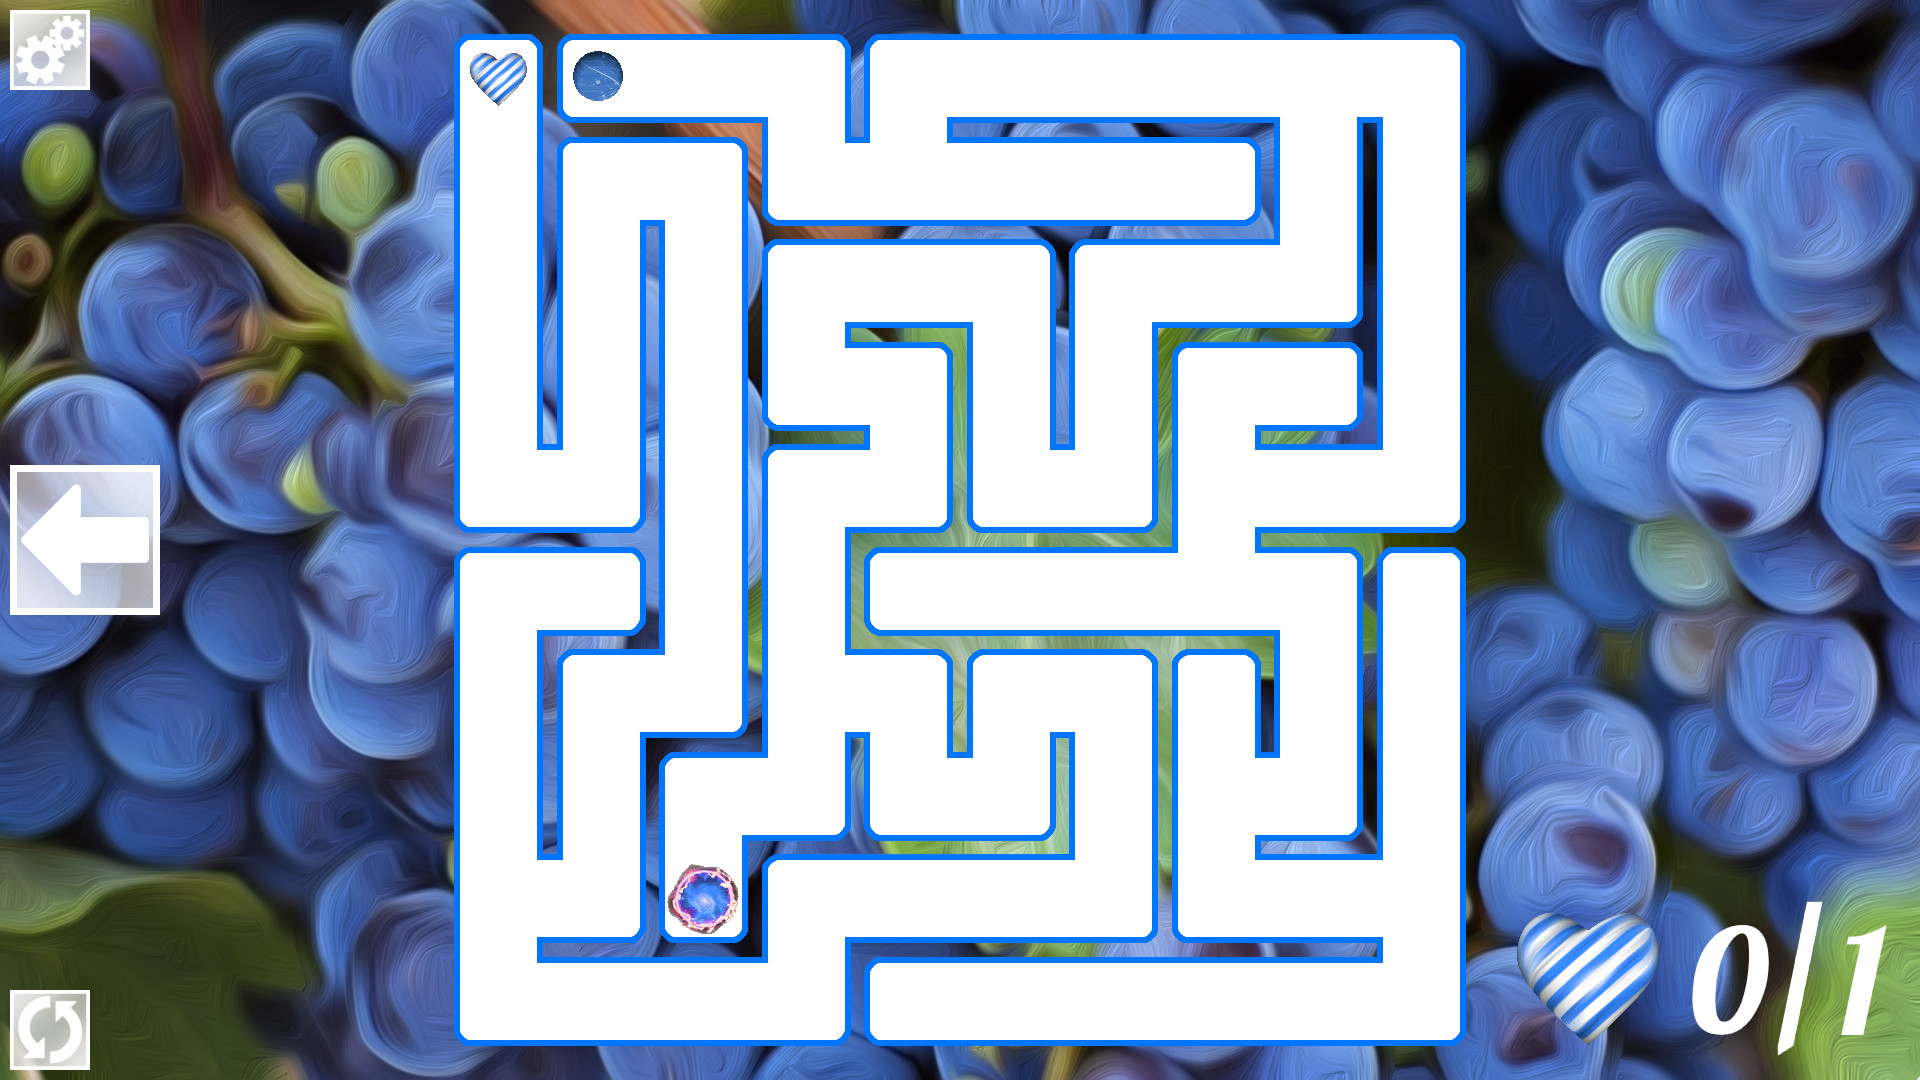 [$ 0.32] Maze Art: Blue Steam CD Key